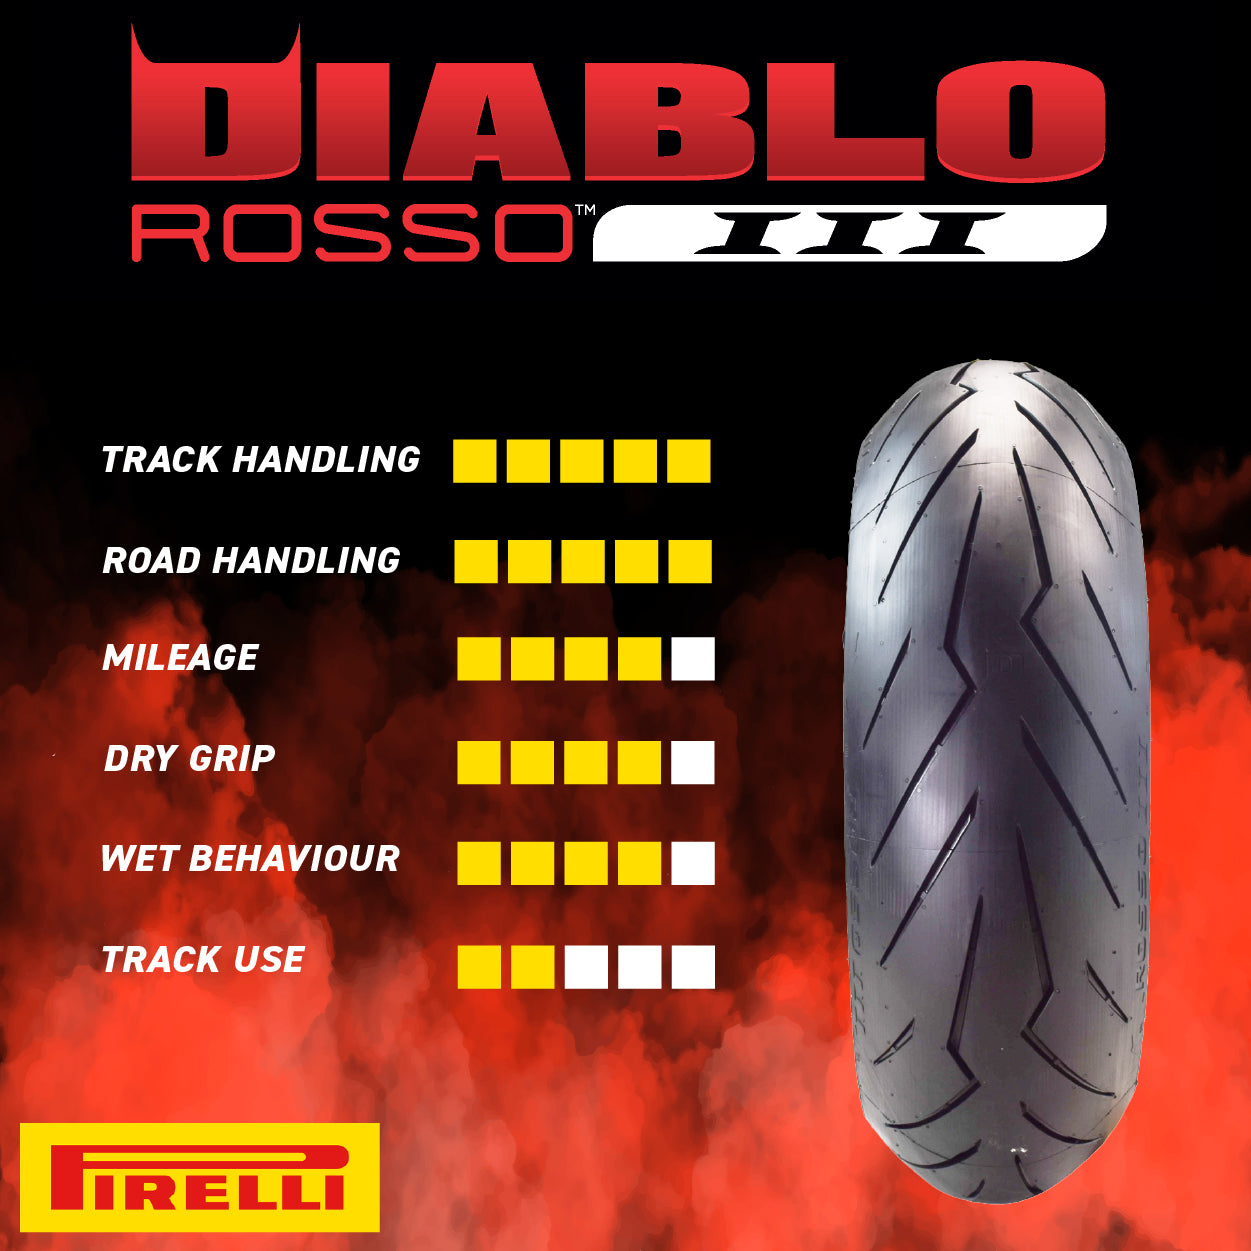 Pirelli Diablo Rosso III 120/60ZR17 180/55ZR17 Front & Rear Motorcycle Tire Set